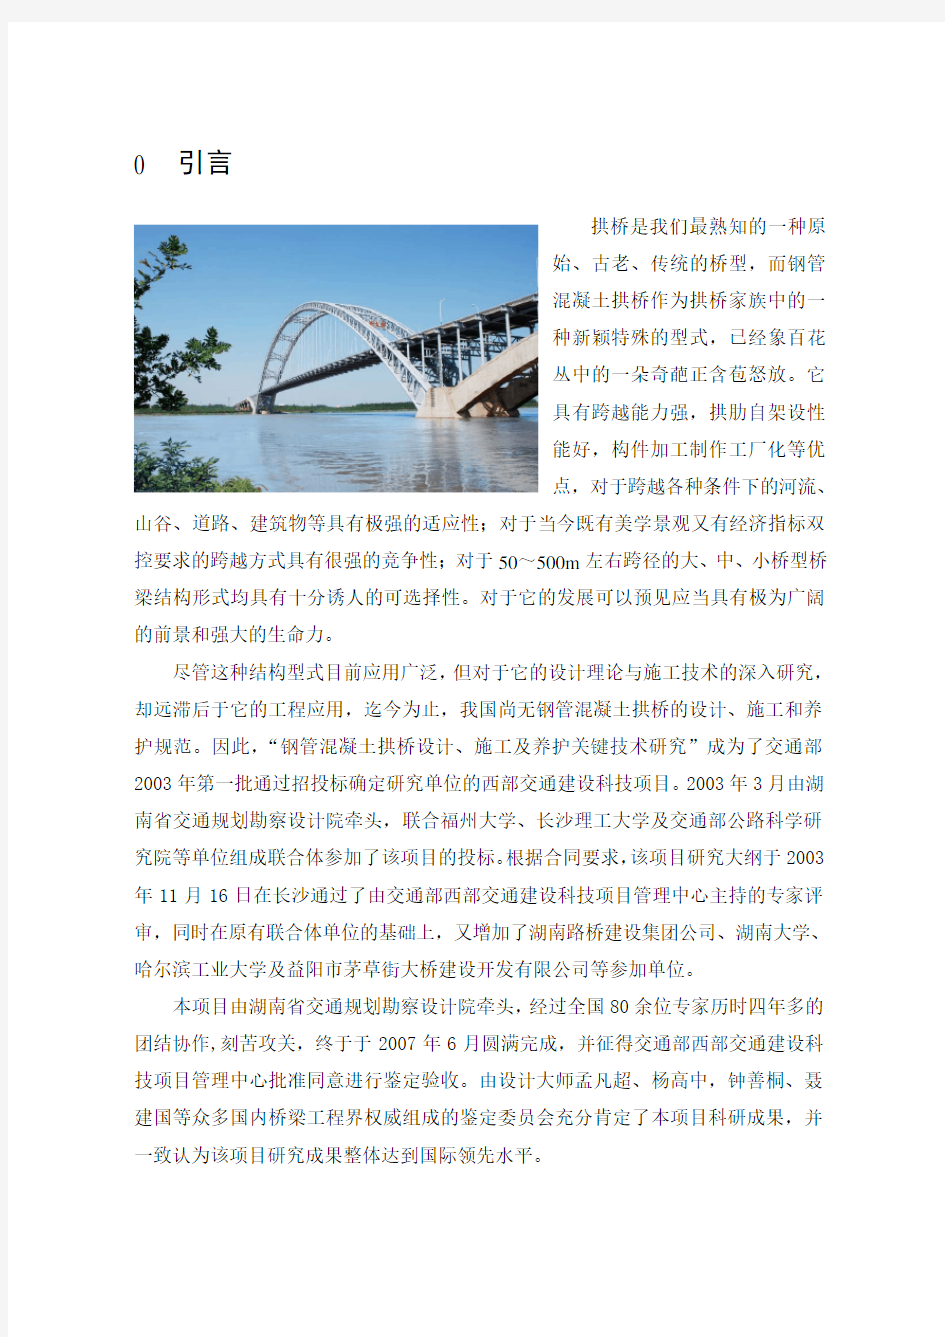 钢管混凝土拱桥设计和施工技术关键技术